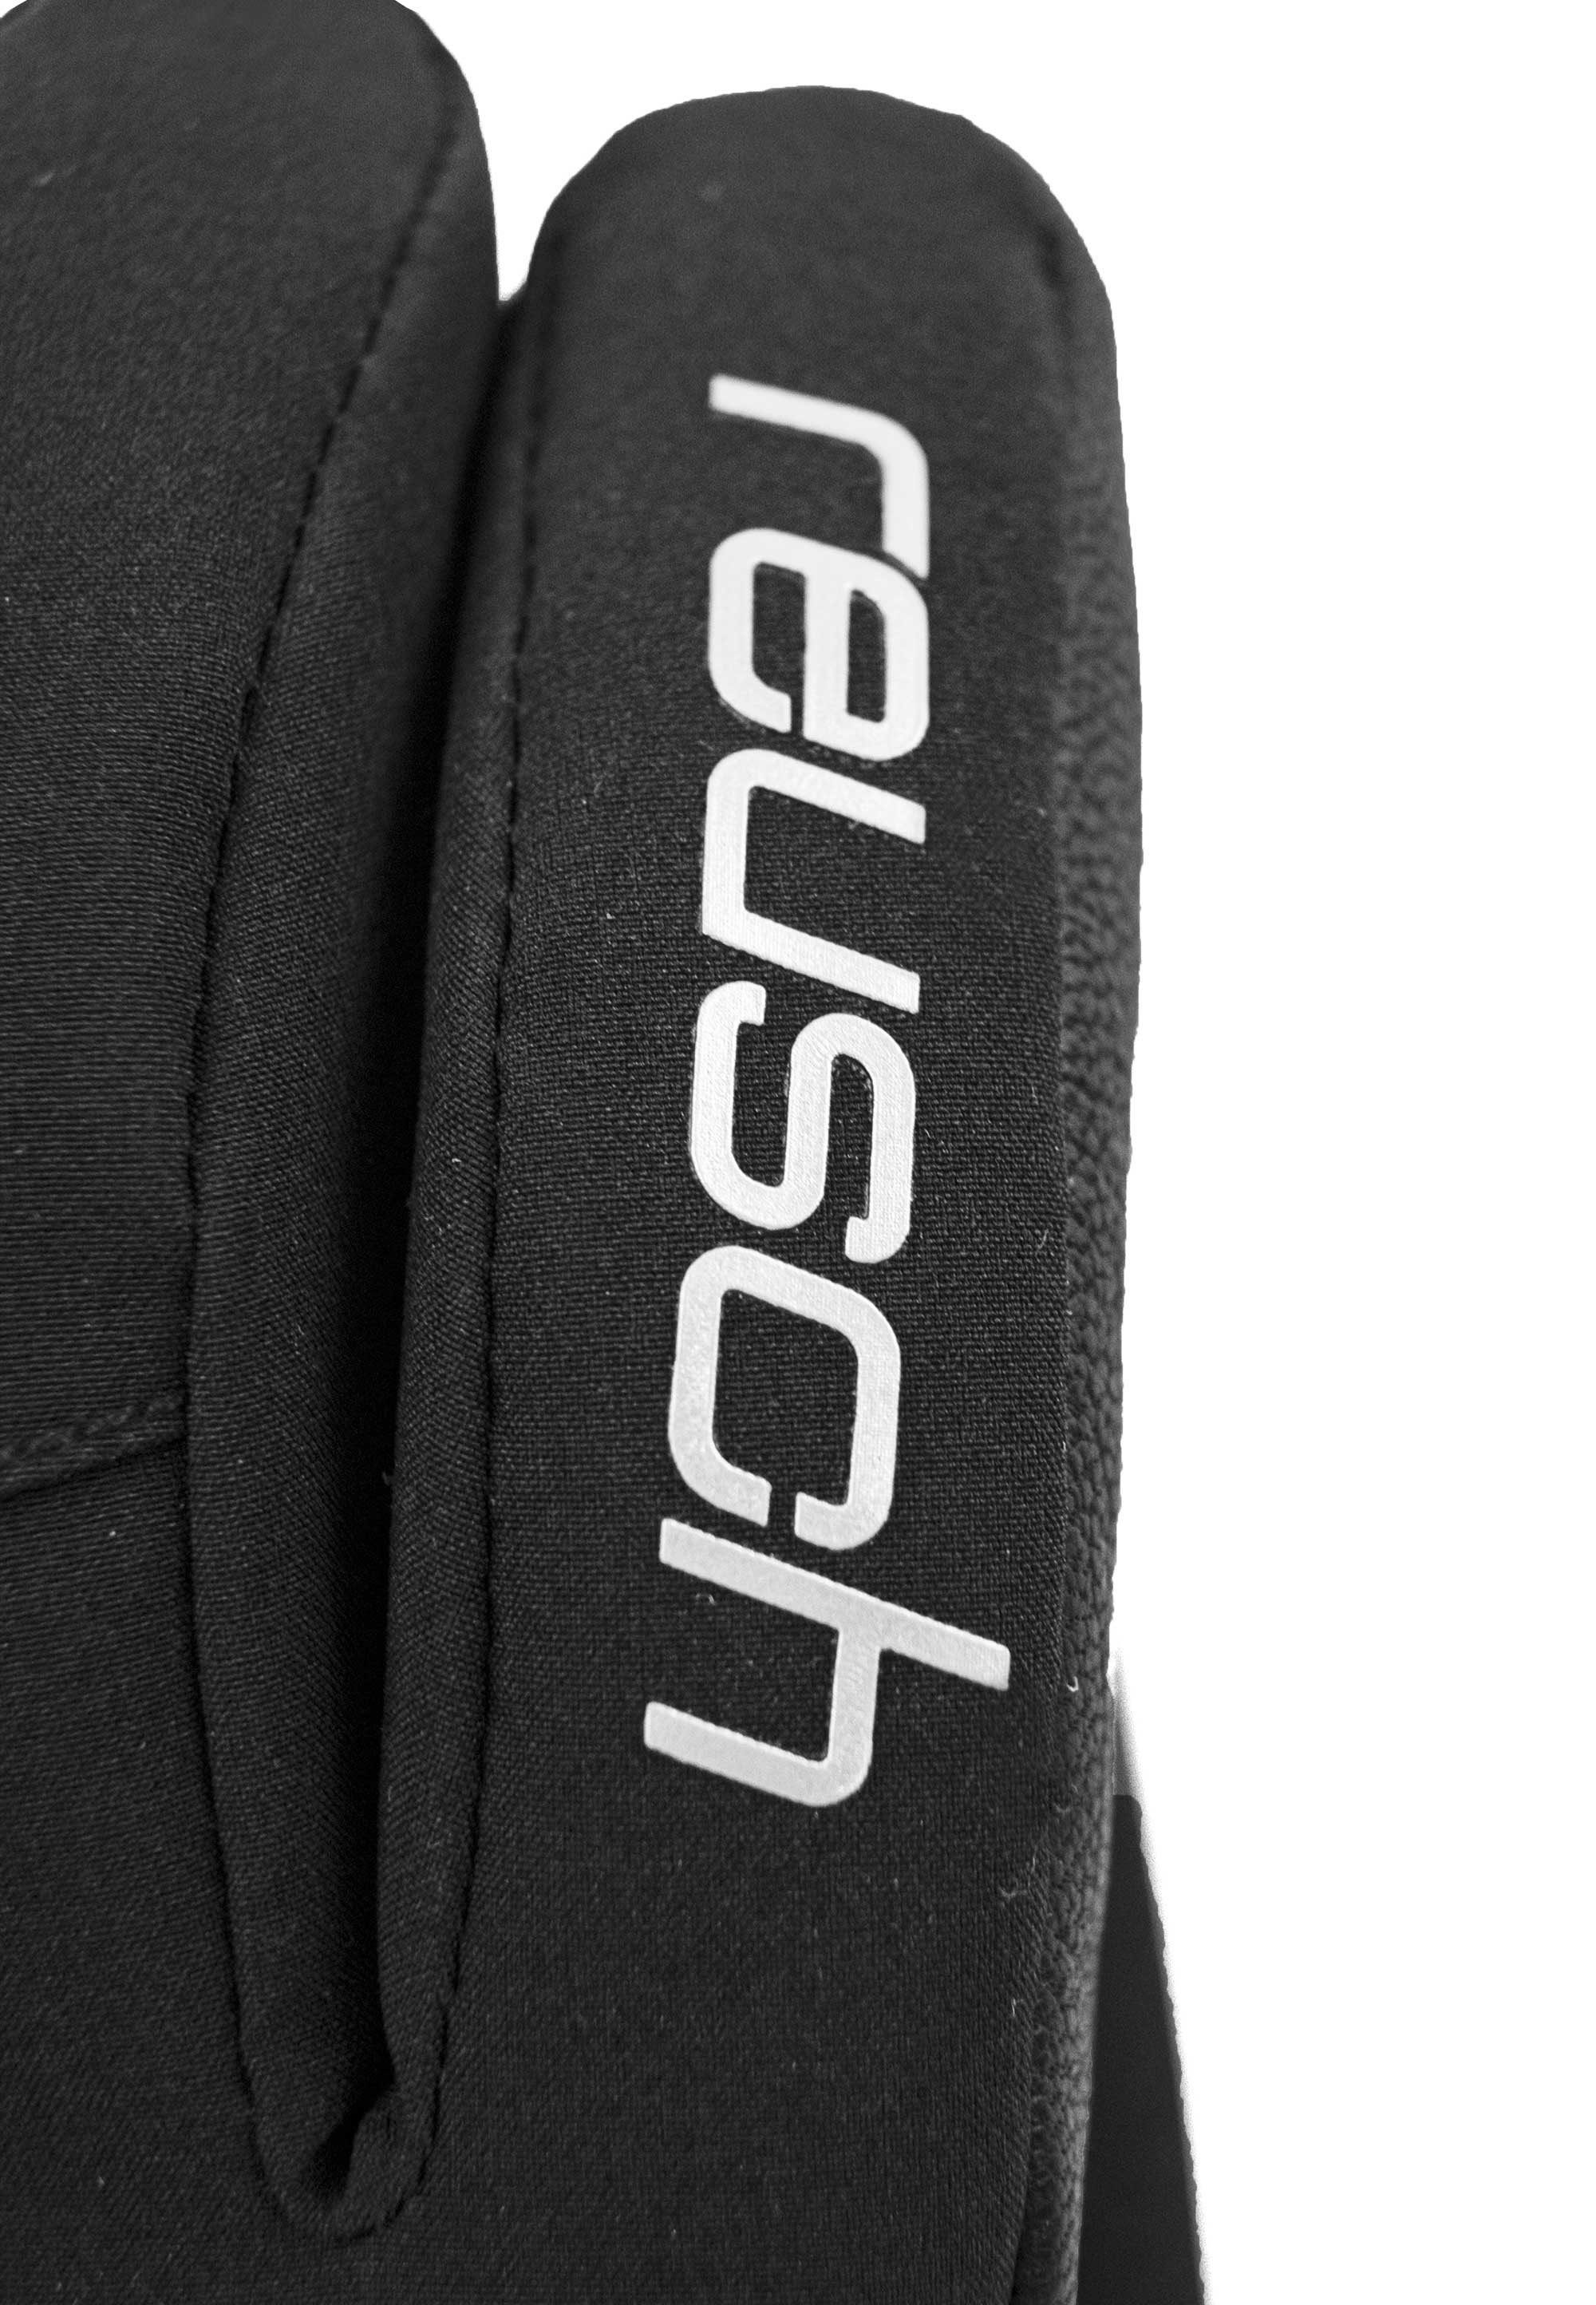 STORMBLOXX™ Reusch schwarz-silberfarben Material wasserdichtem atmungsaktivem Tessa aus und Skihandschuhe